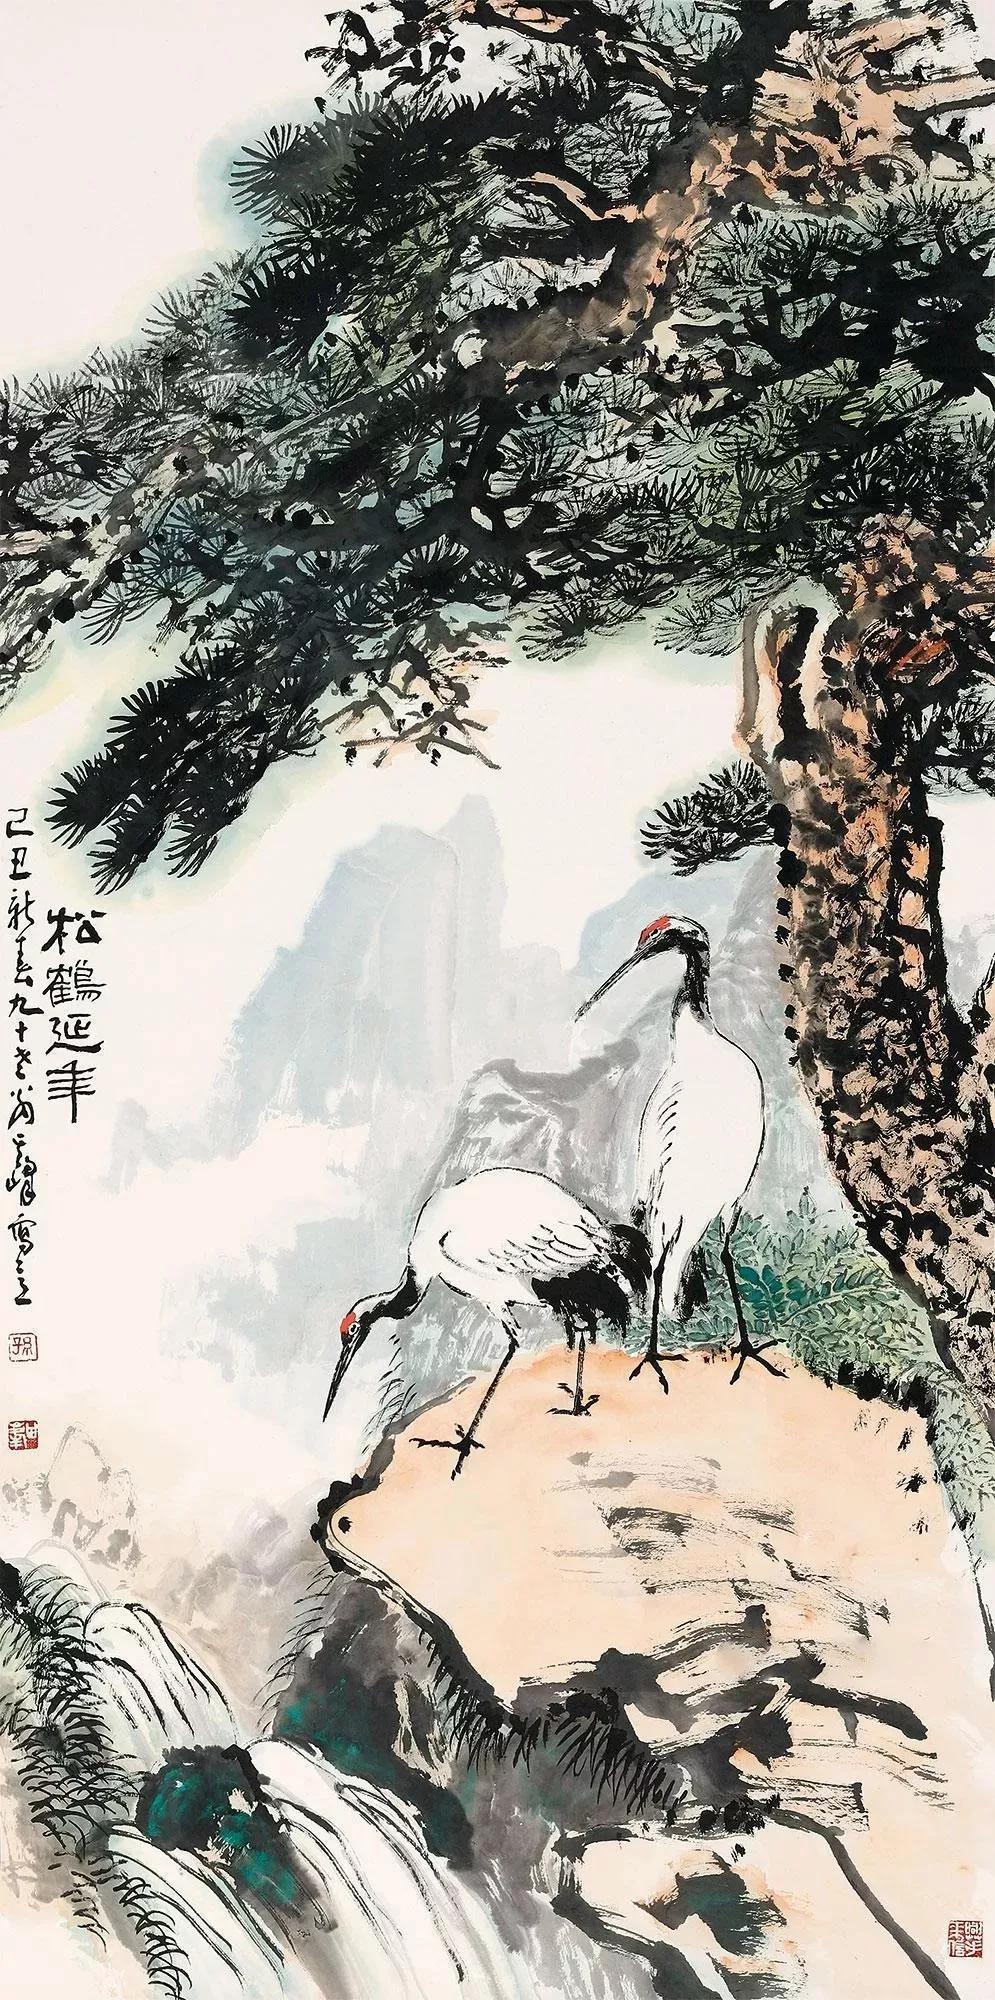 第1400期:孙其峰——2018年最高成交价前10幅作品,中国画家拍卖成交